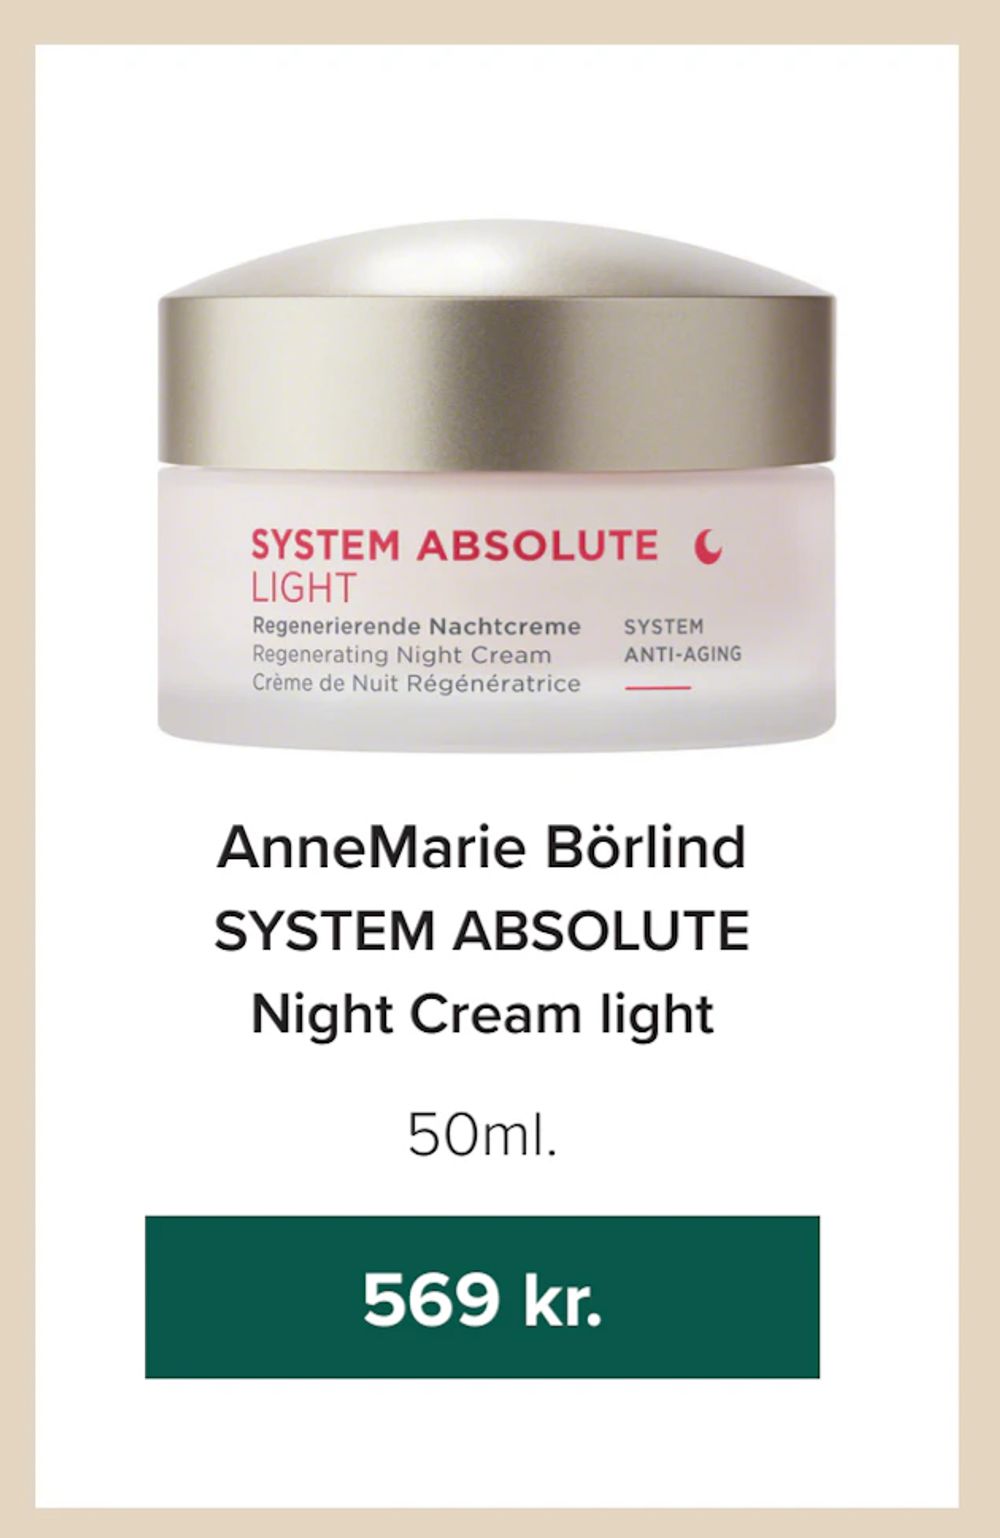 Tilbud på AnneMarie Börlind SYSTEM ABSOLUTE Night Cream light fra Helsemin til 569 kr.